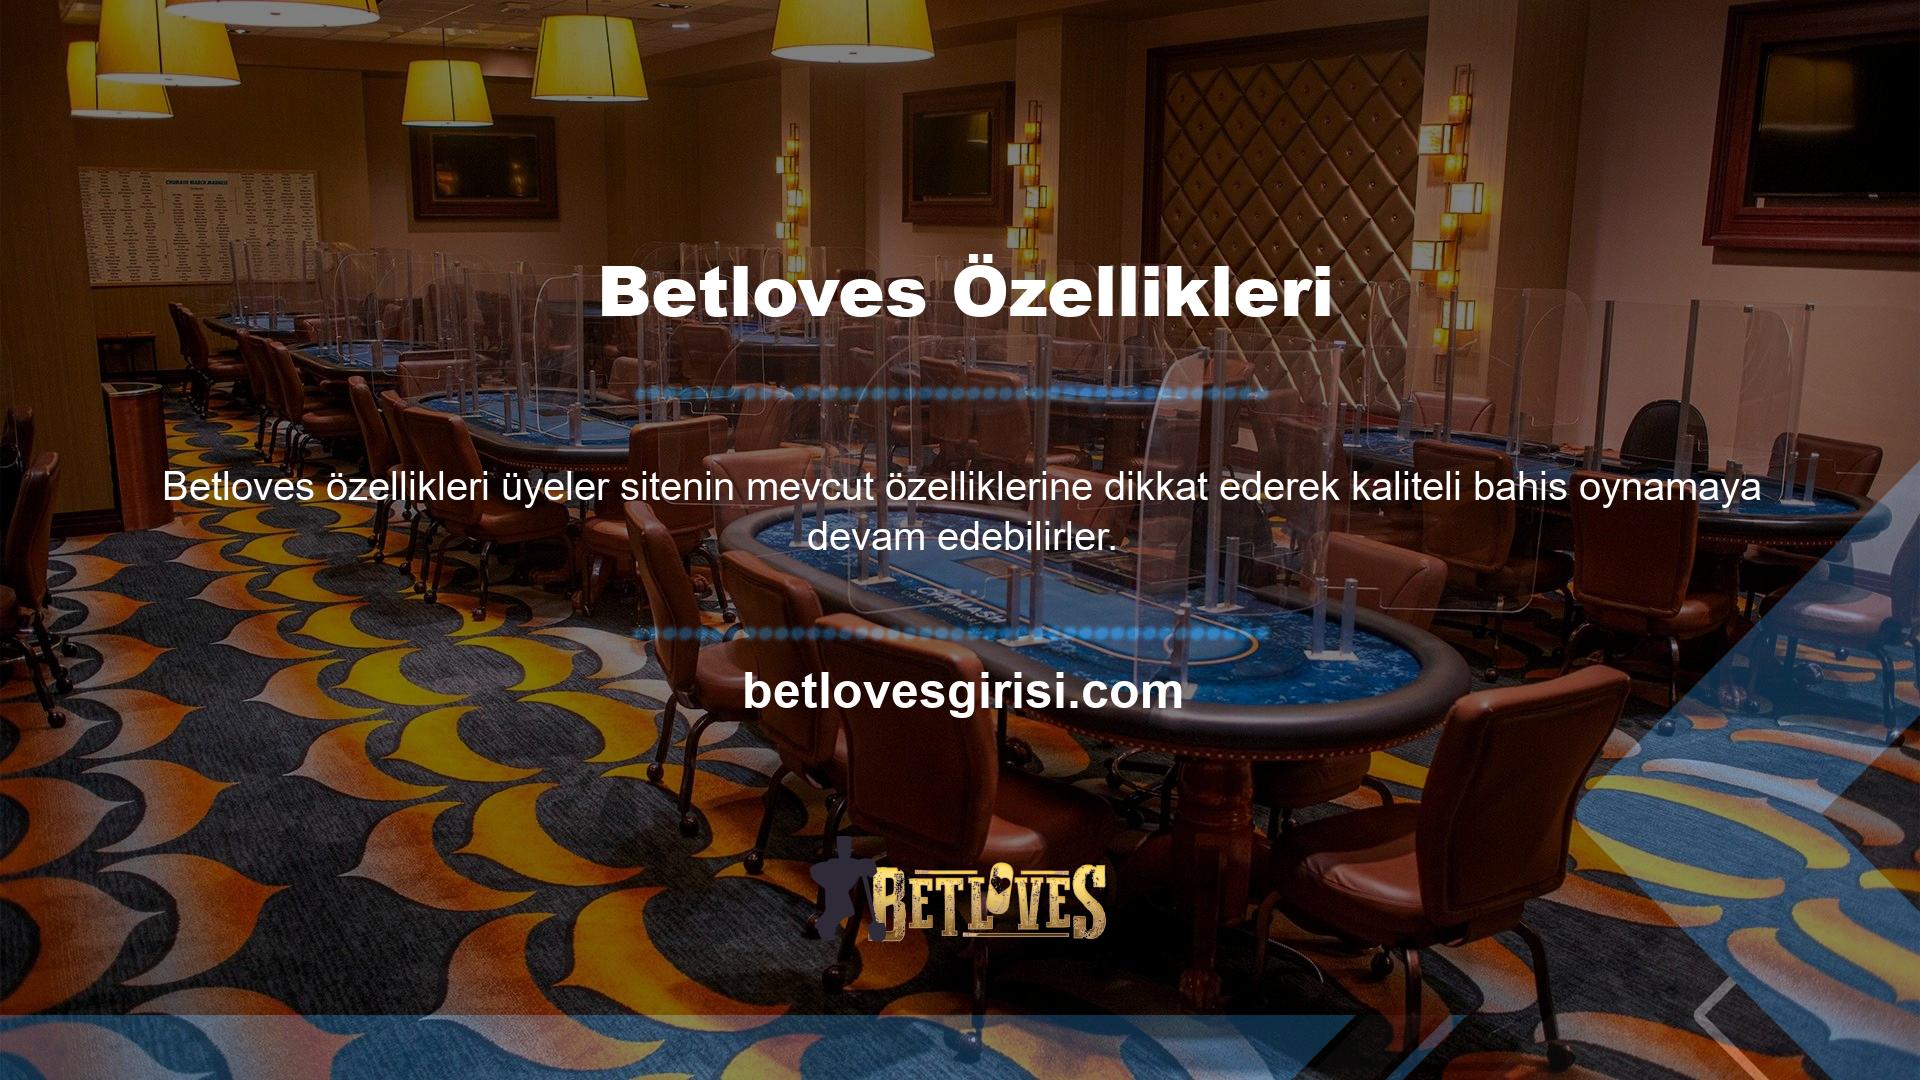 Betloves casino sektörünün en karlı bahis şirketlerinden biridir